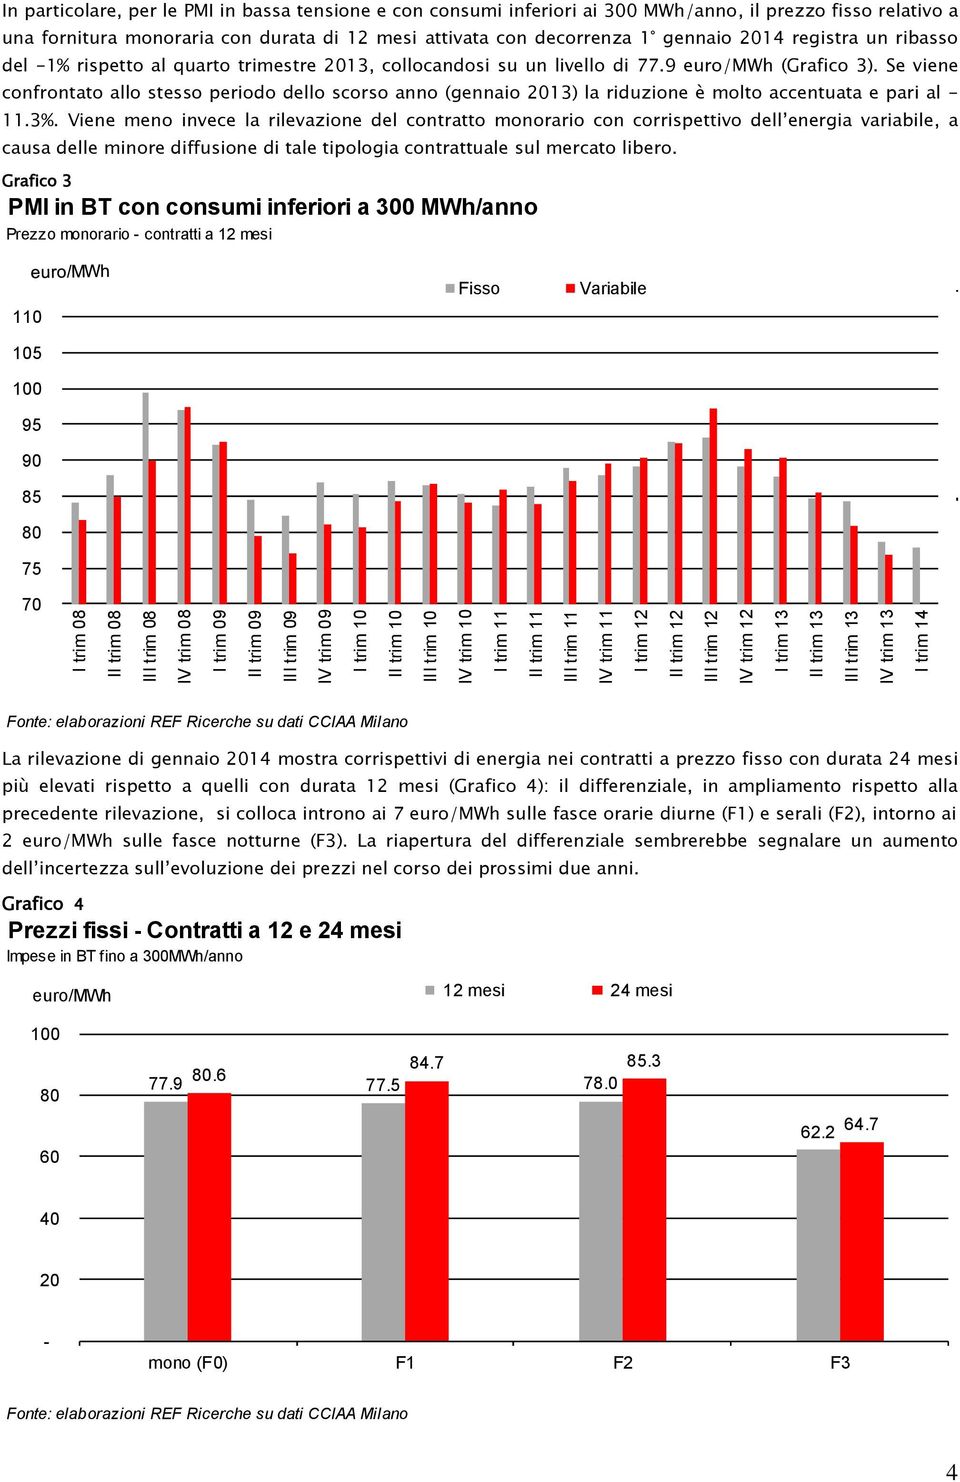 fornitura monoraria con durata di 12 mesi attivata con decorrenza 1 gennaio 2014 registra un ribasso del -1% rispetto al quarto trimestre 2013, collocandosi su un livello di 77.9 euro/mwh (Grafico 3).